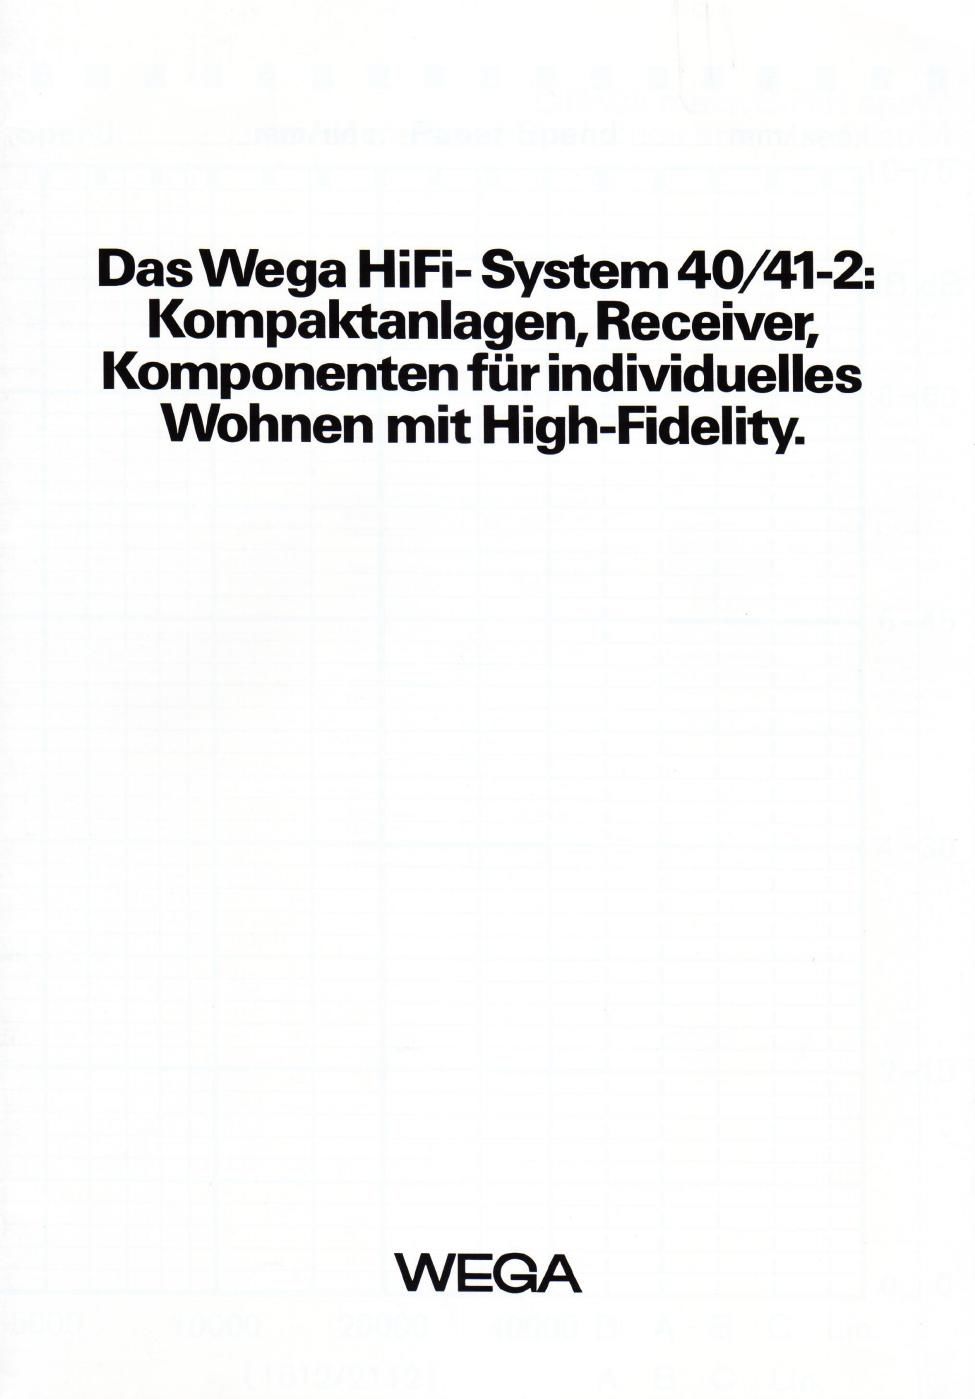 wega 1981 2